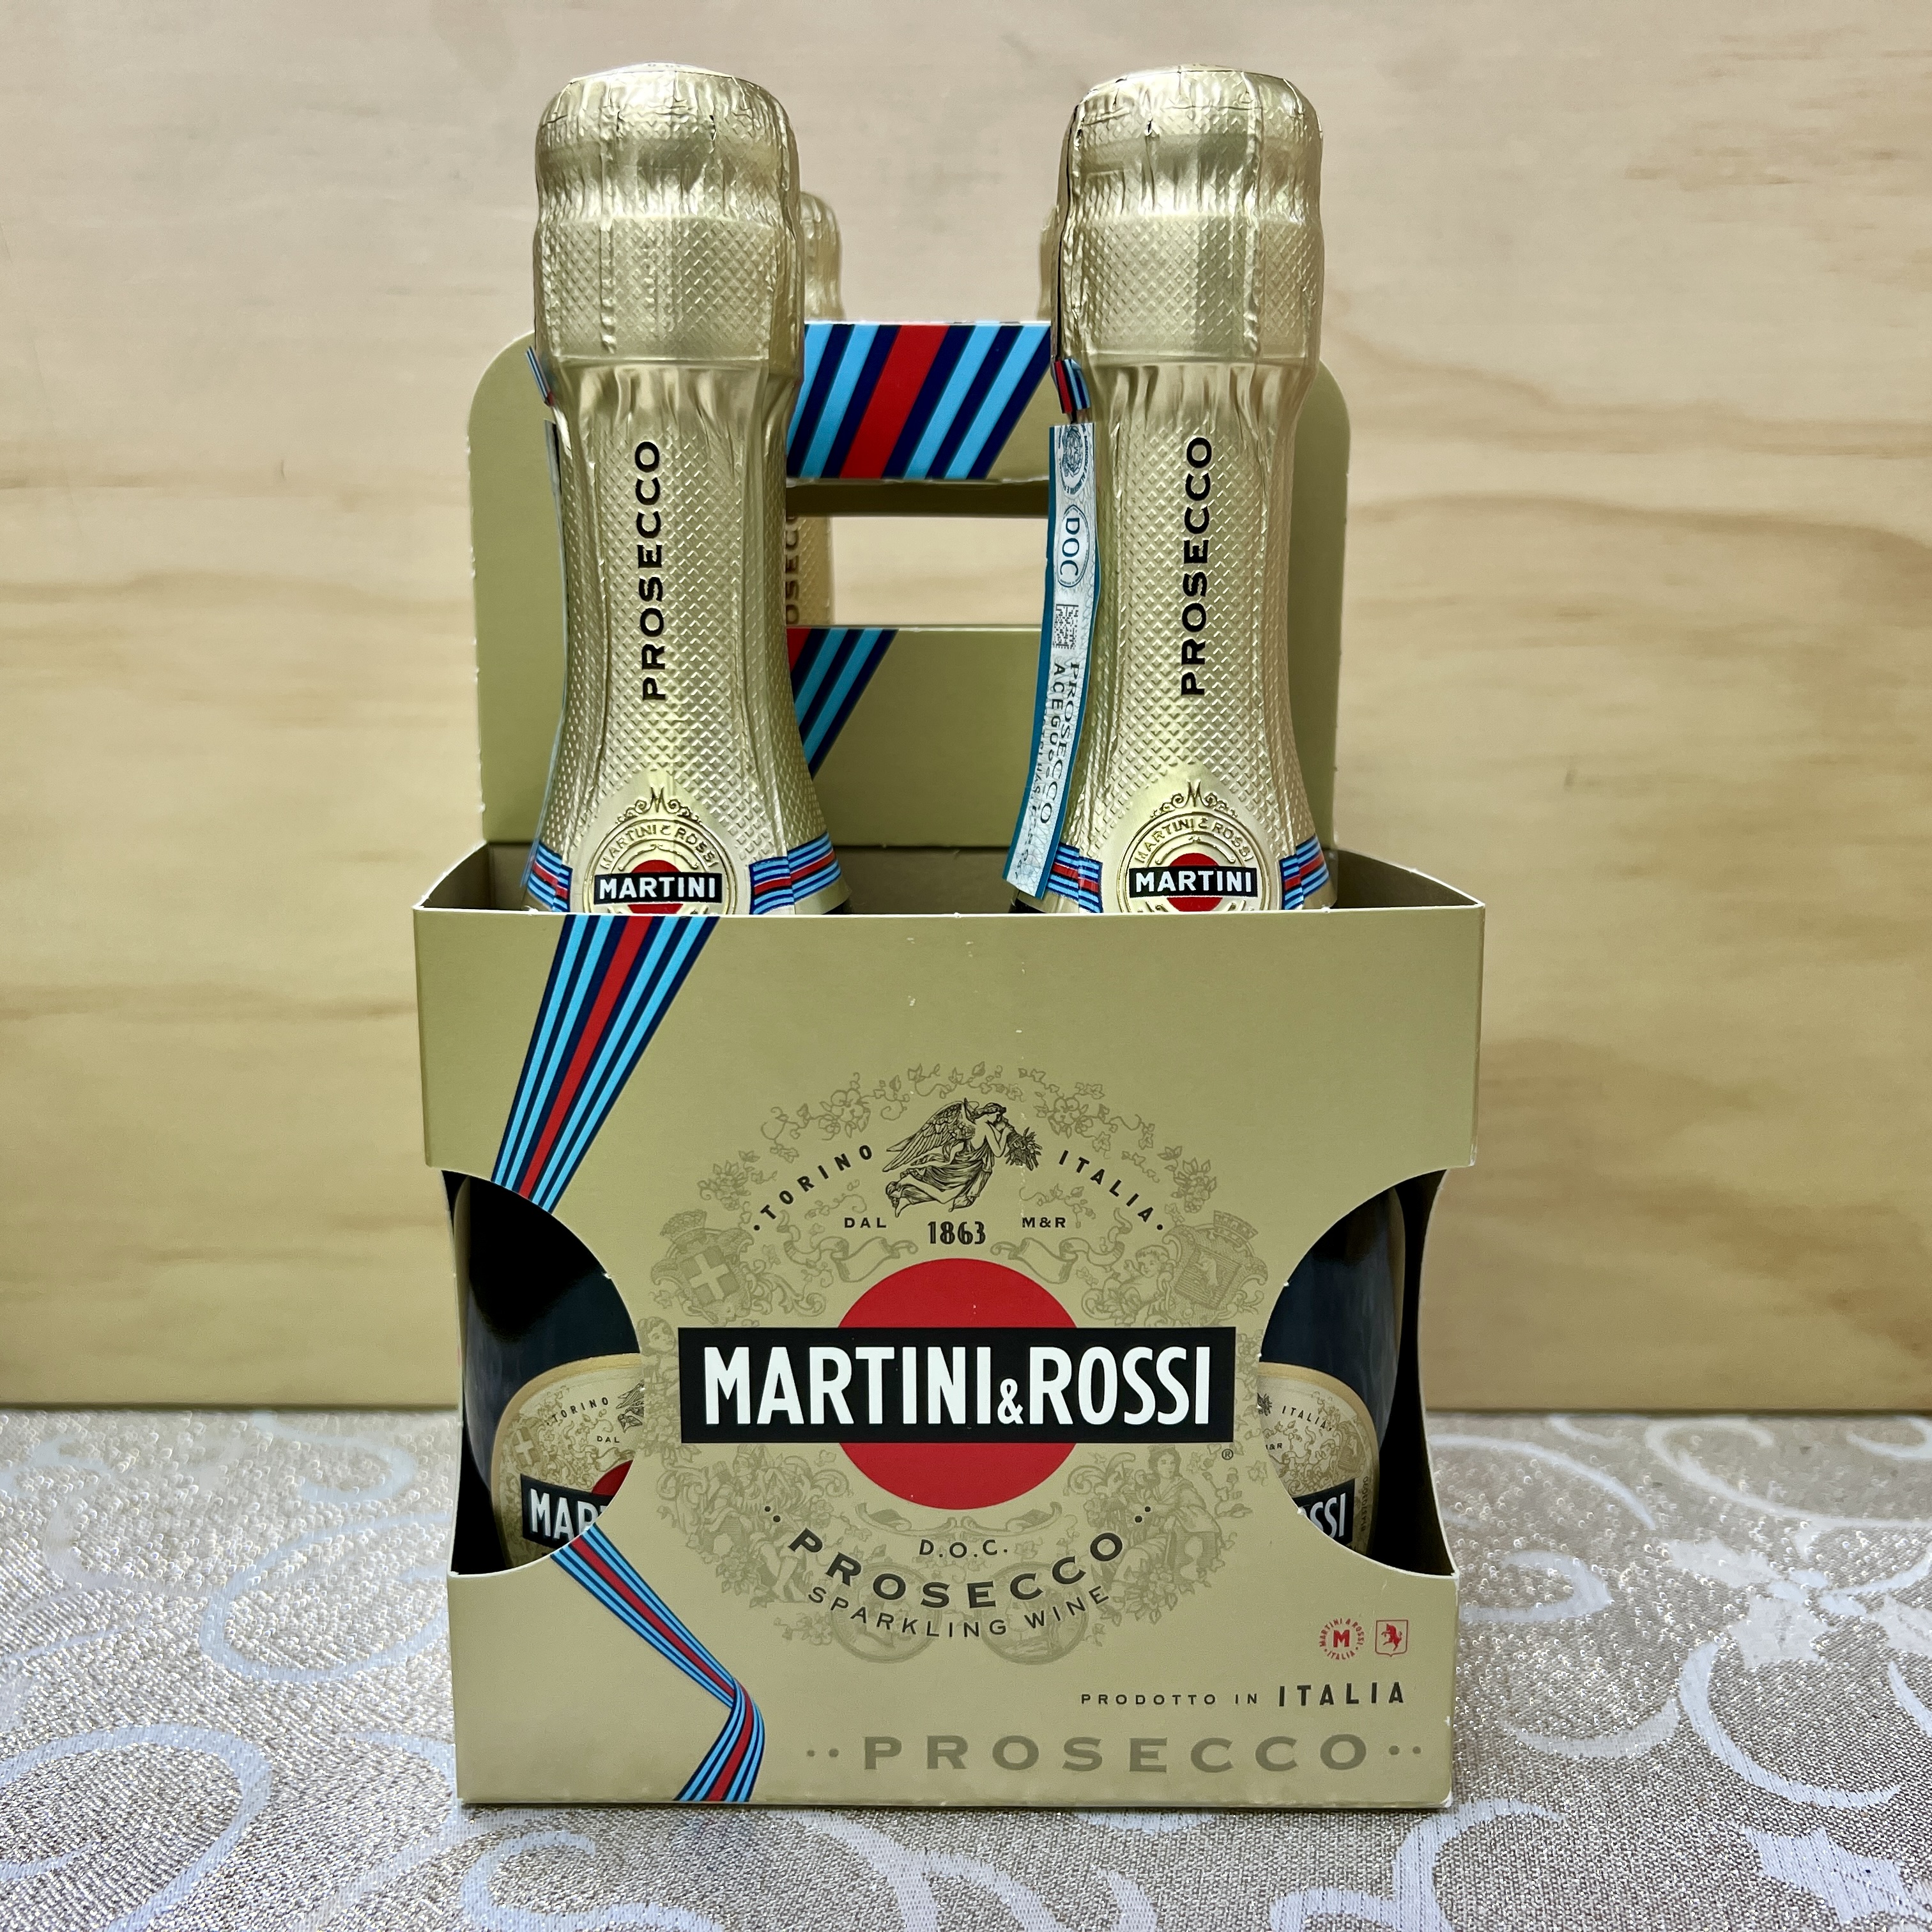 Martini & Rossi Prosecco 187ml x 4 bottles